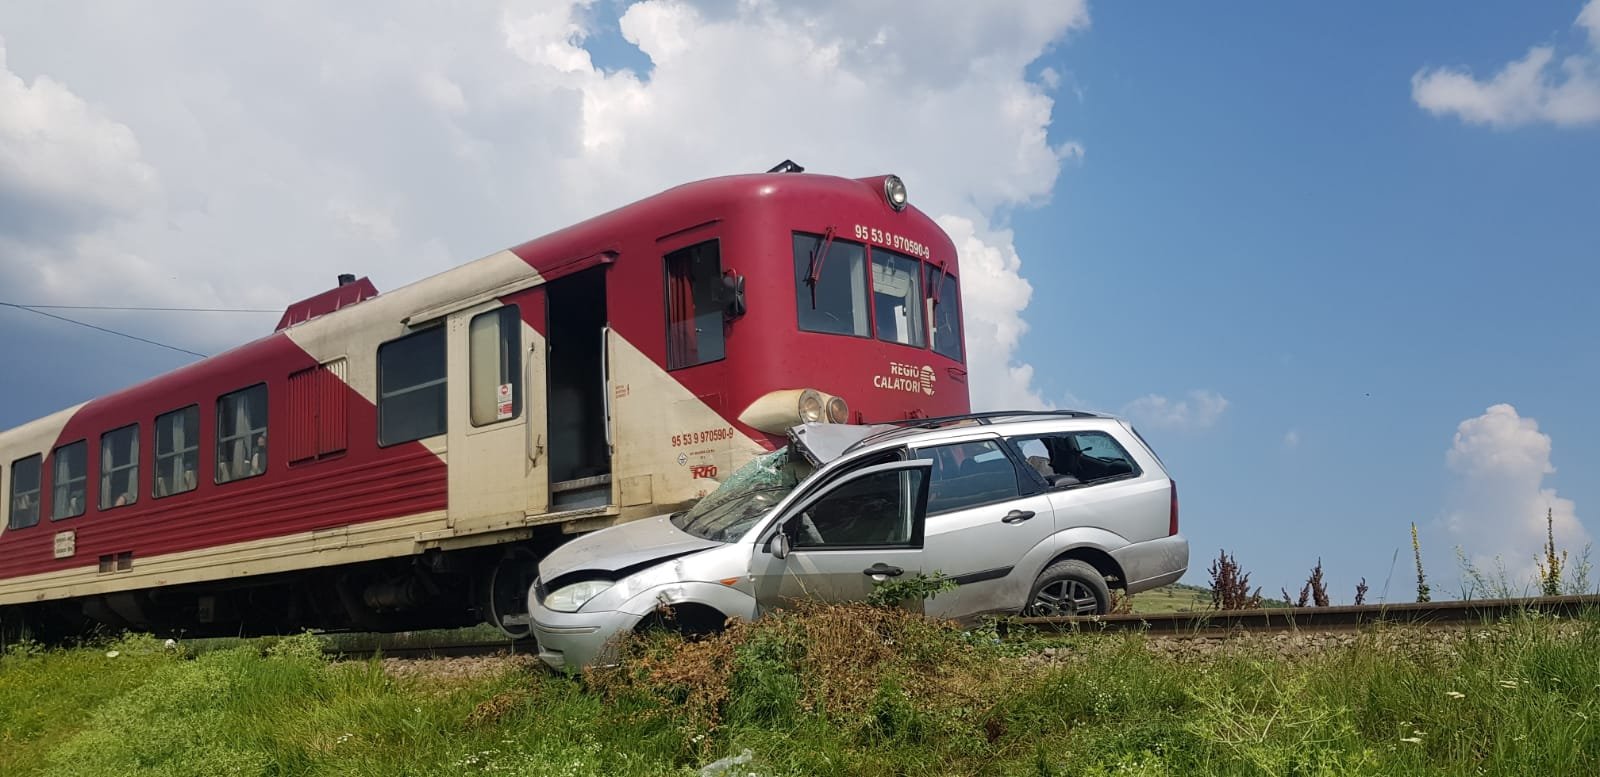  FOTO: Au scăpat vii din mașina târâtă de tren. Soțul a sărit, soția a rămas inăuntru